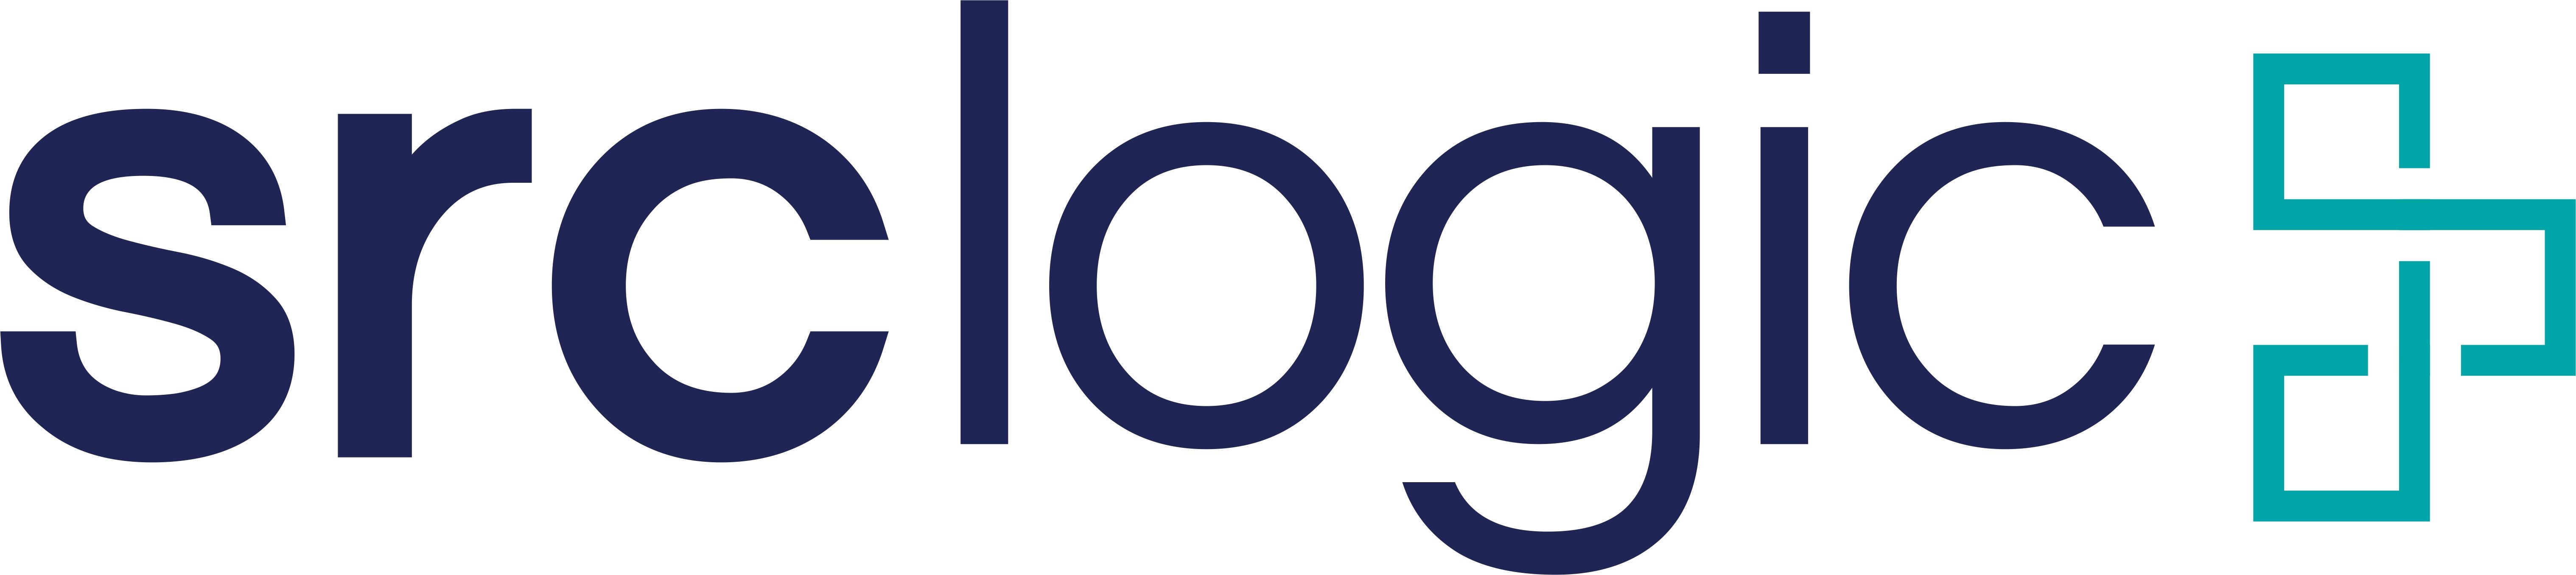 srcLogic_RGB-logo.jpg